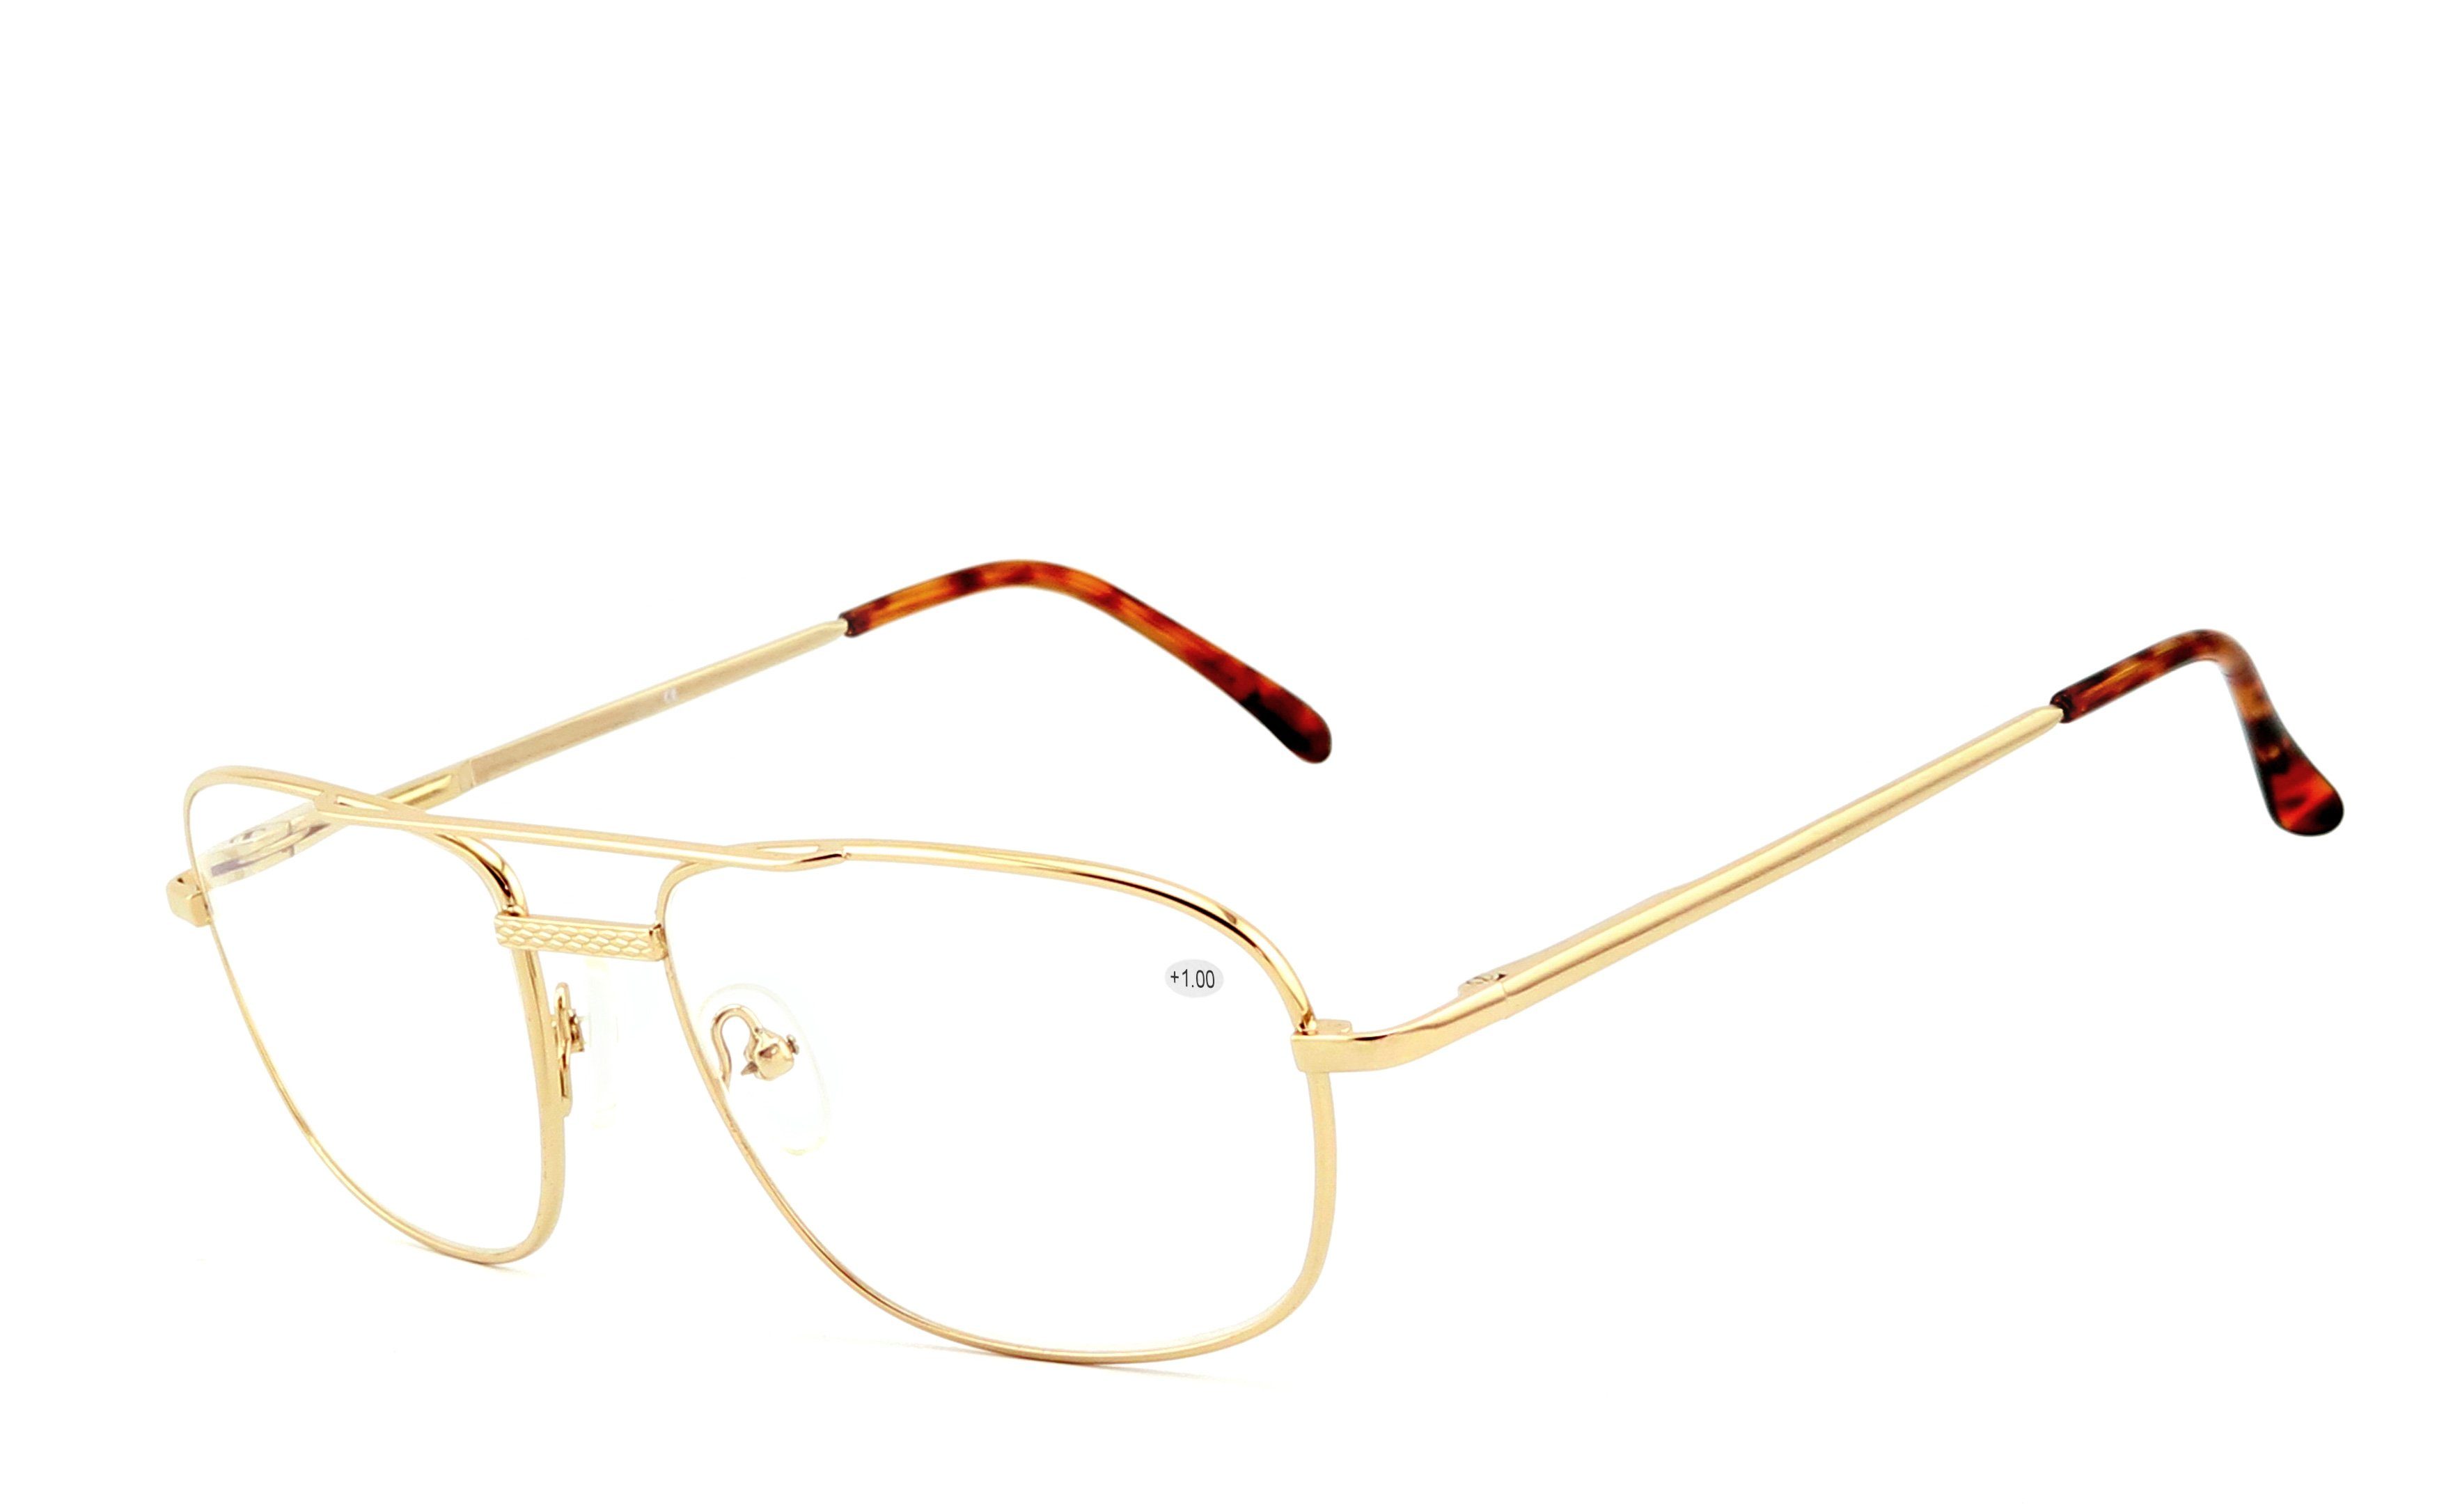 EYESTUFF Lesebrille Lesebrille 008 gold, Flex-Scharnieren Brillenbügel mit hochwertigen